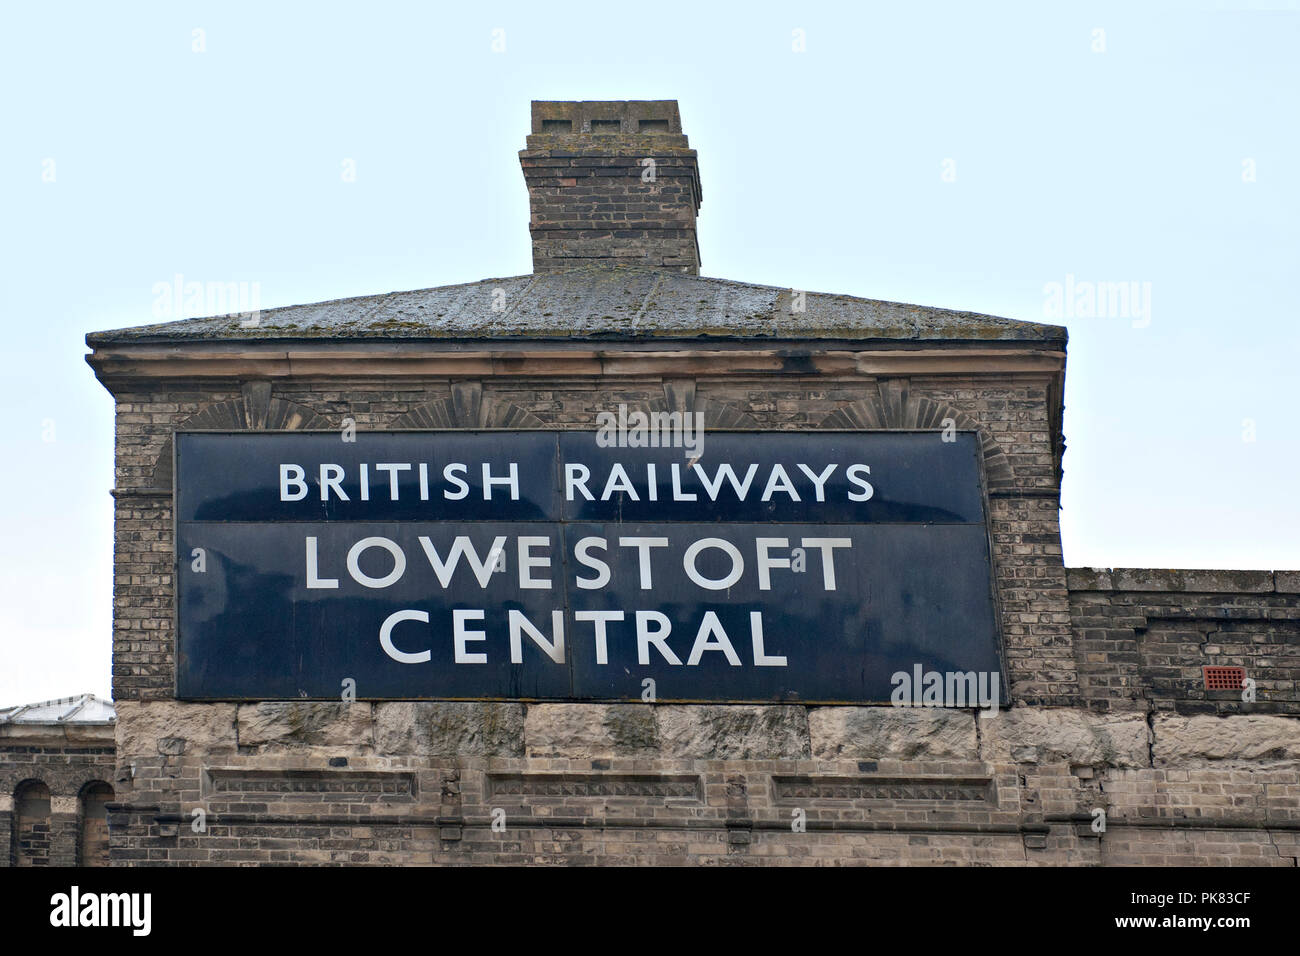 Eine ungewöhnliche Überlebender eines anderen Alter, Emaille British Railways (nicht der British Rail) Zeichen an Lowestoft Central Station. Jetzt (2018) Bahnhof Lowestoft. Stockfoto